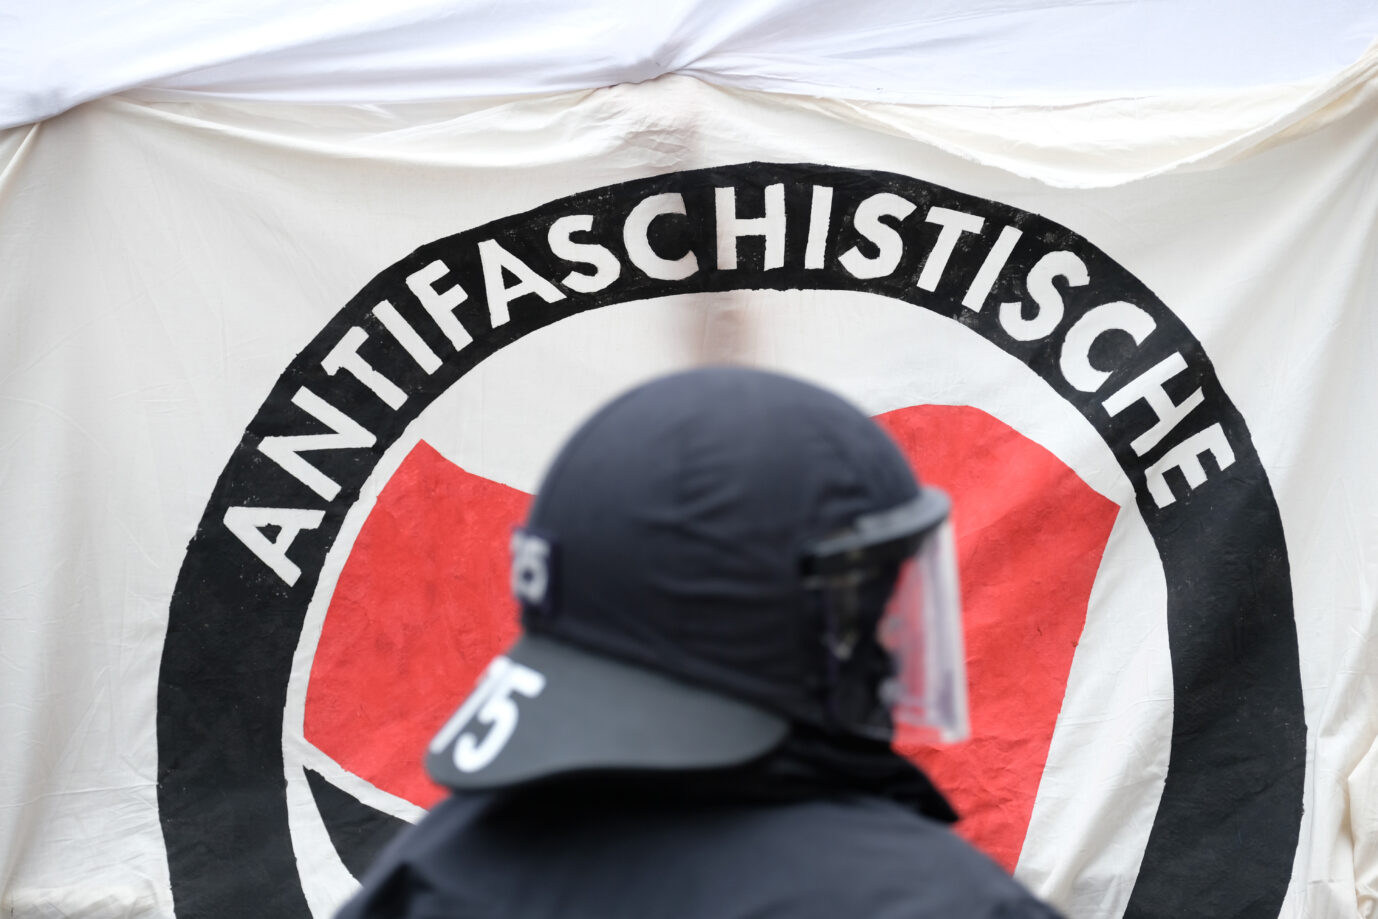 Die Ermittlungen gegen die Antifa-Seite "Indymedia.linksunten" laufen ins Leere (Symbolbild) Foto: picture alliance/dpa/dpa-Zentralbild | Sebastian Willnow